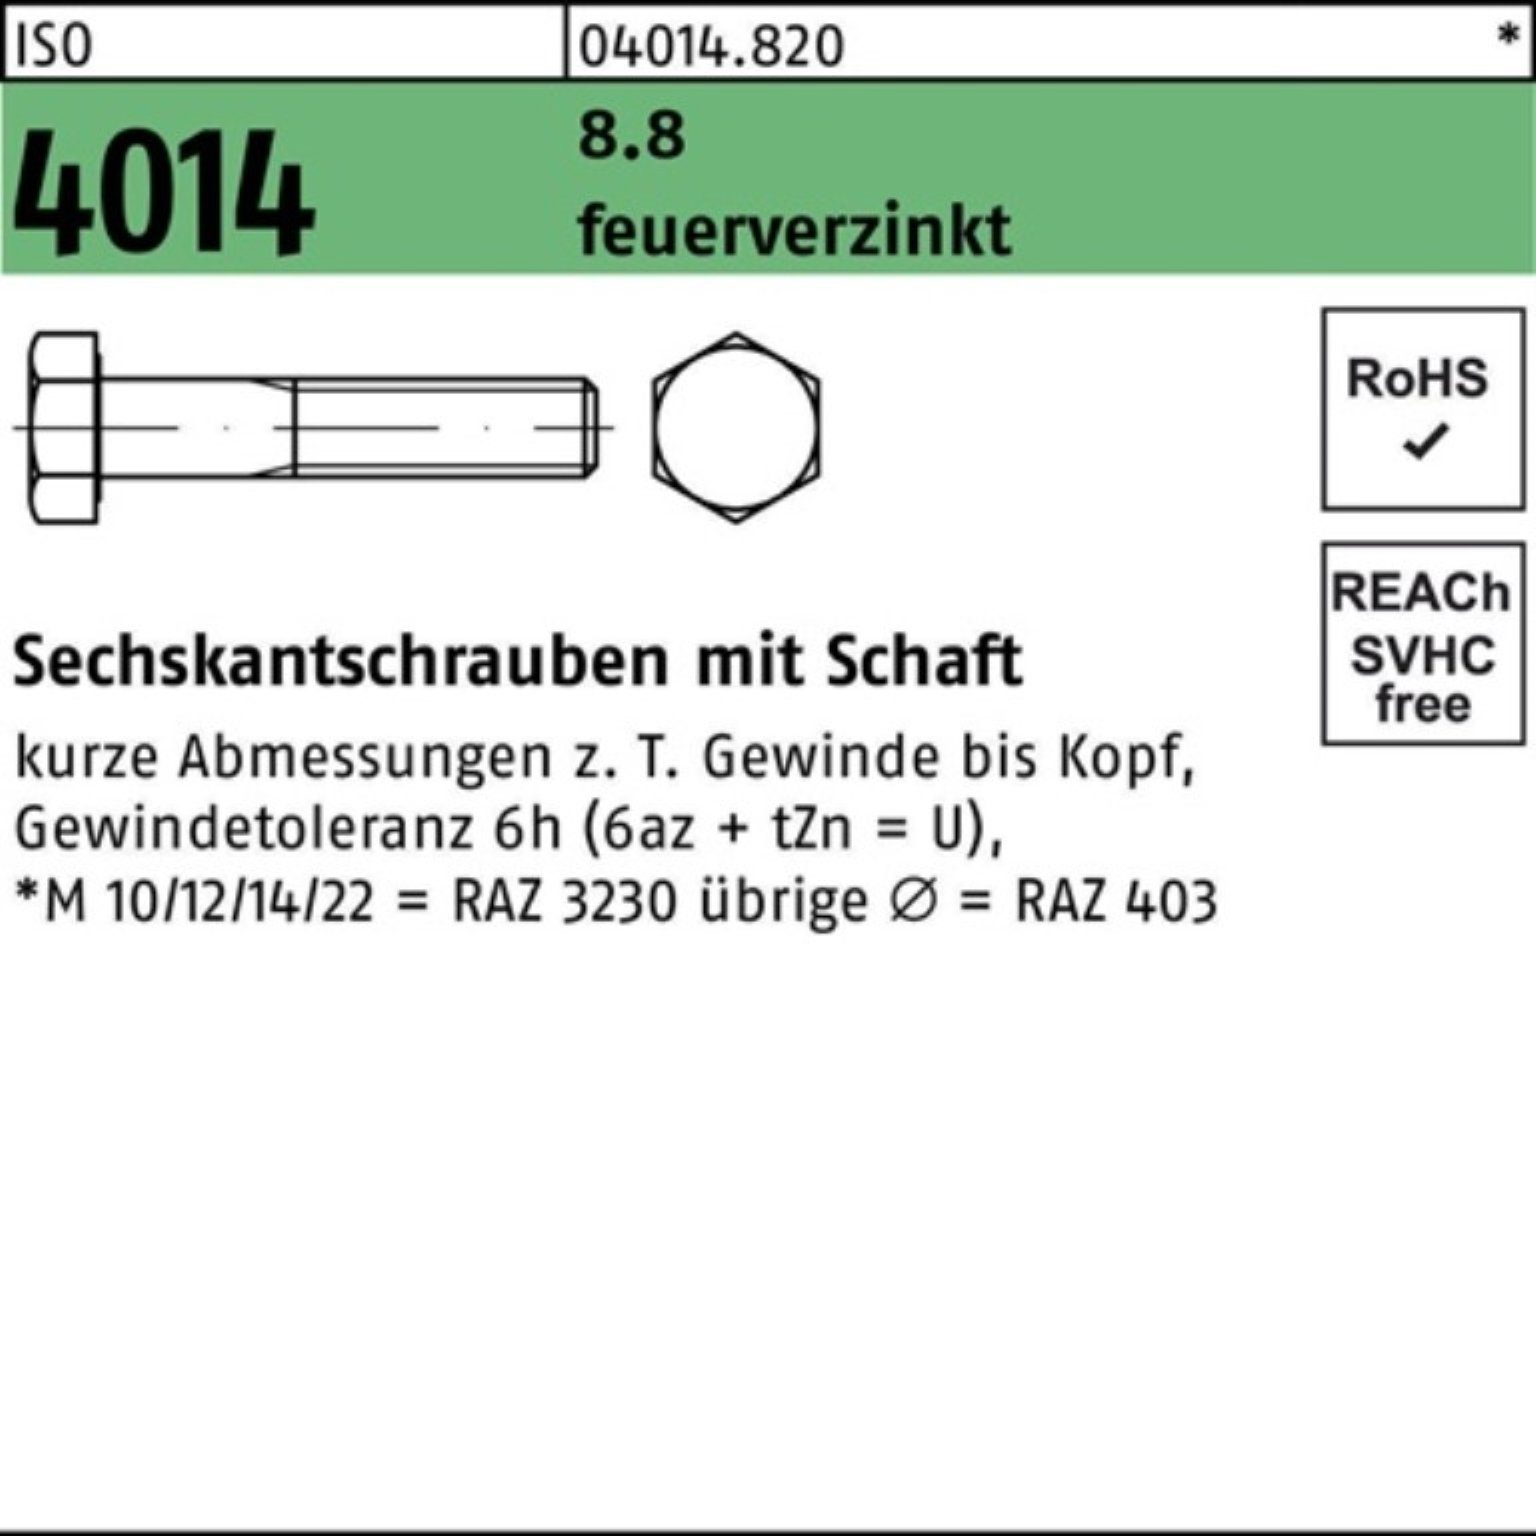 Bufab Sechskantschraube 100er Pack Sechskantschraube ISO 4014 Schaft M16x 90 8.8 feuerverz. 25